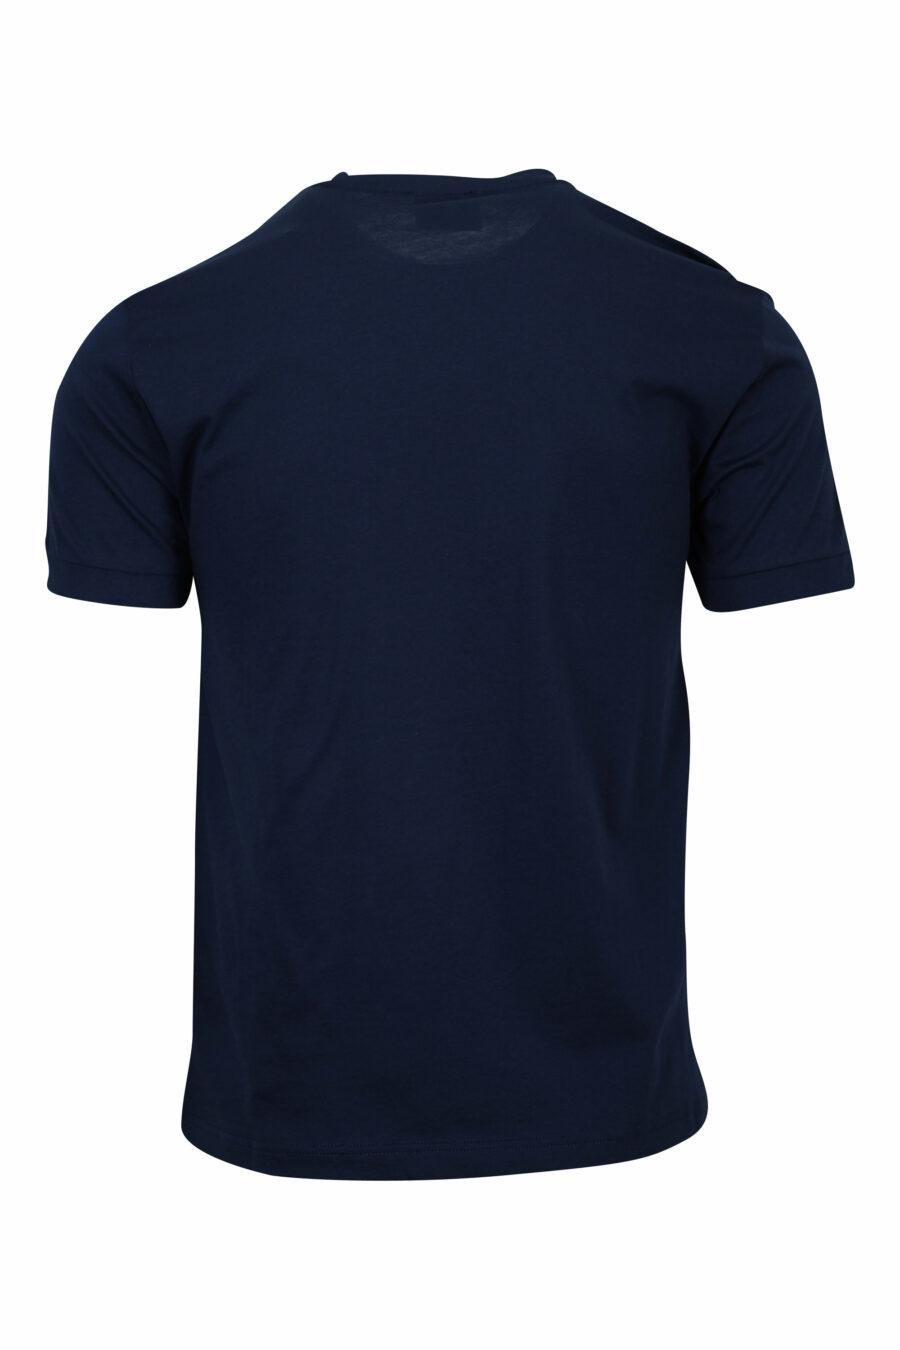 Camiseta azul oscuro con minilogo en cinta "lux identity" negro - 8058947490585 1